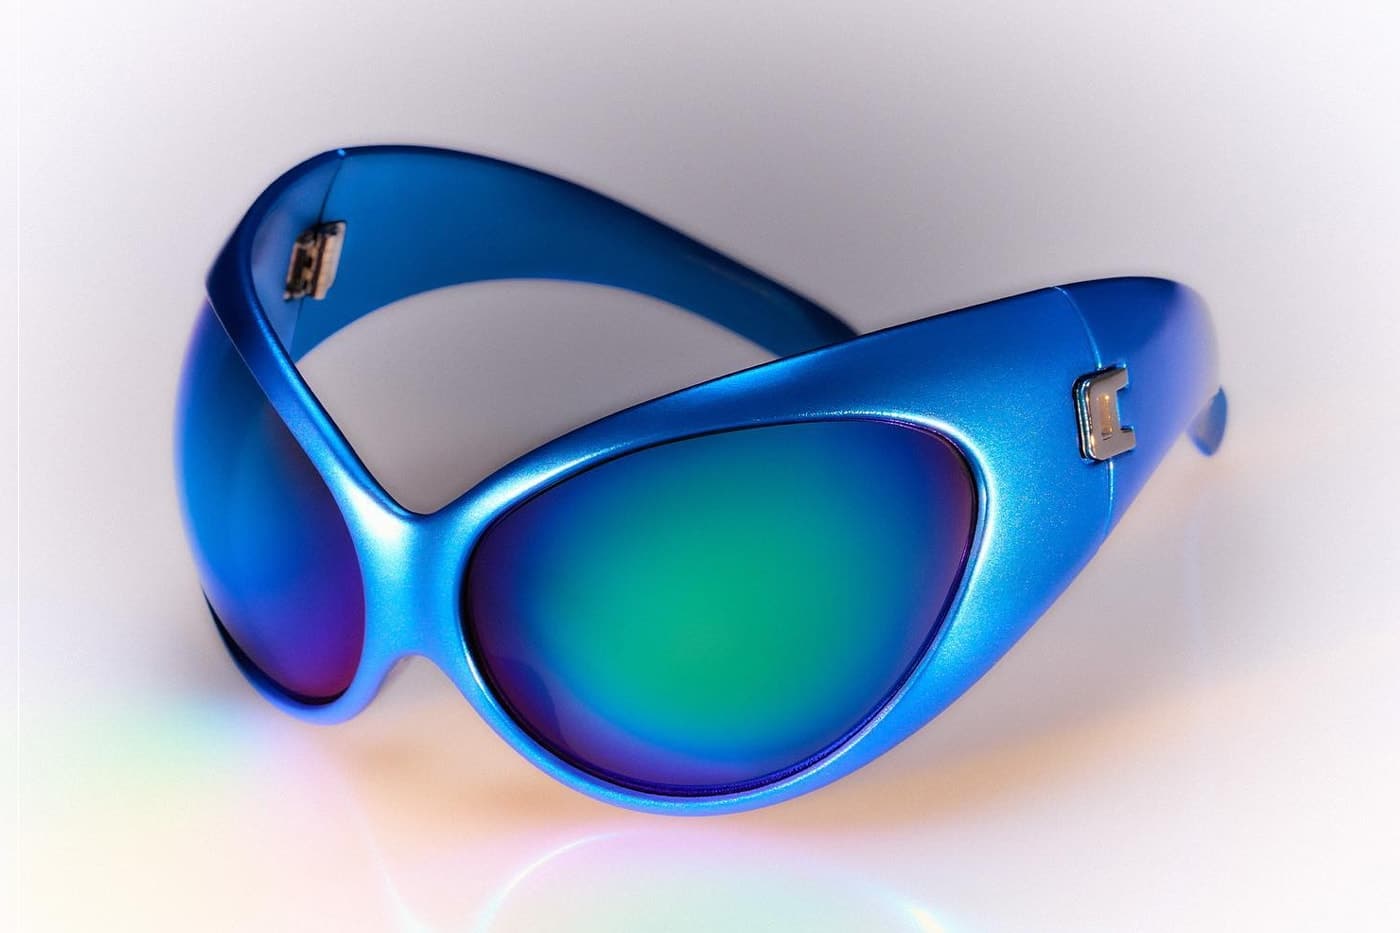 Las gafas que necesitas para la joda 👽🔥 ig alien.eyewear #techno #r